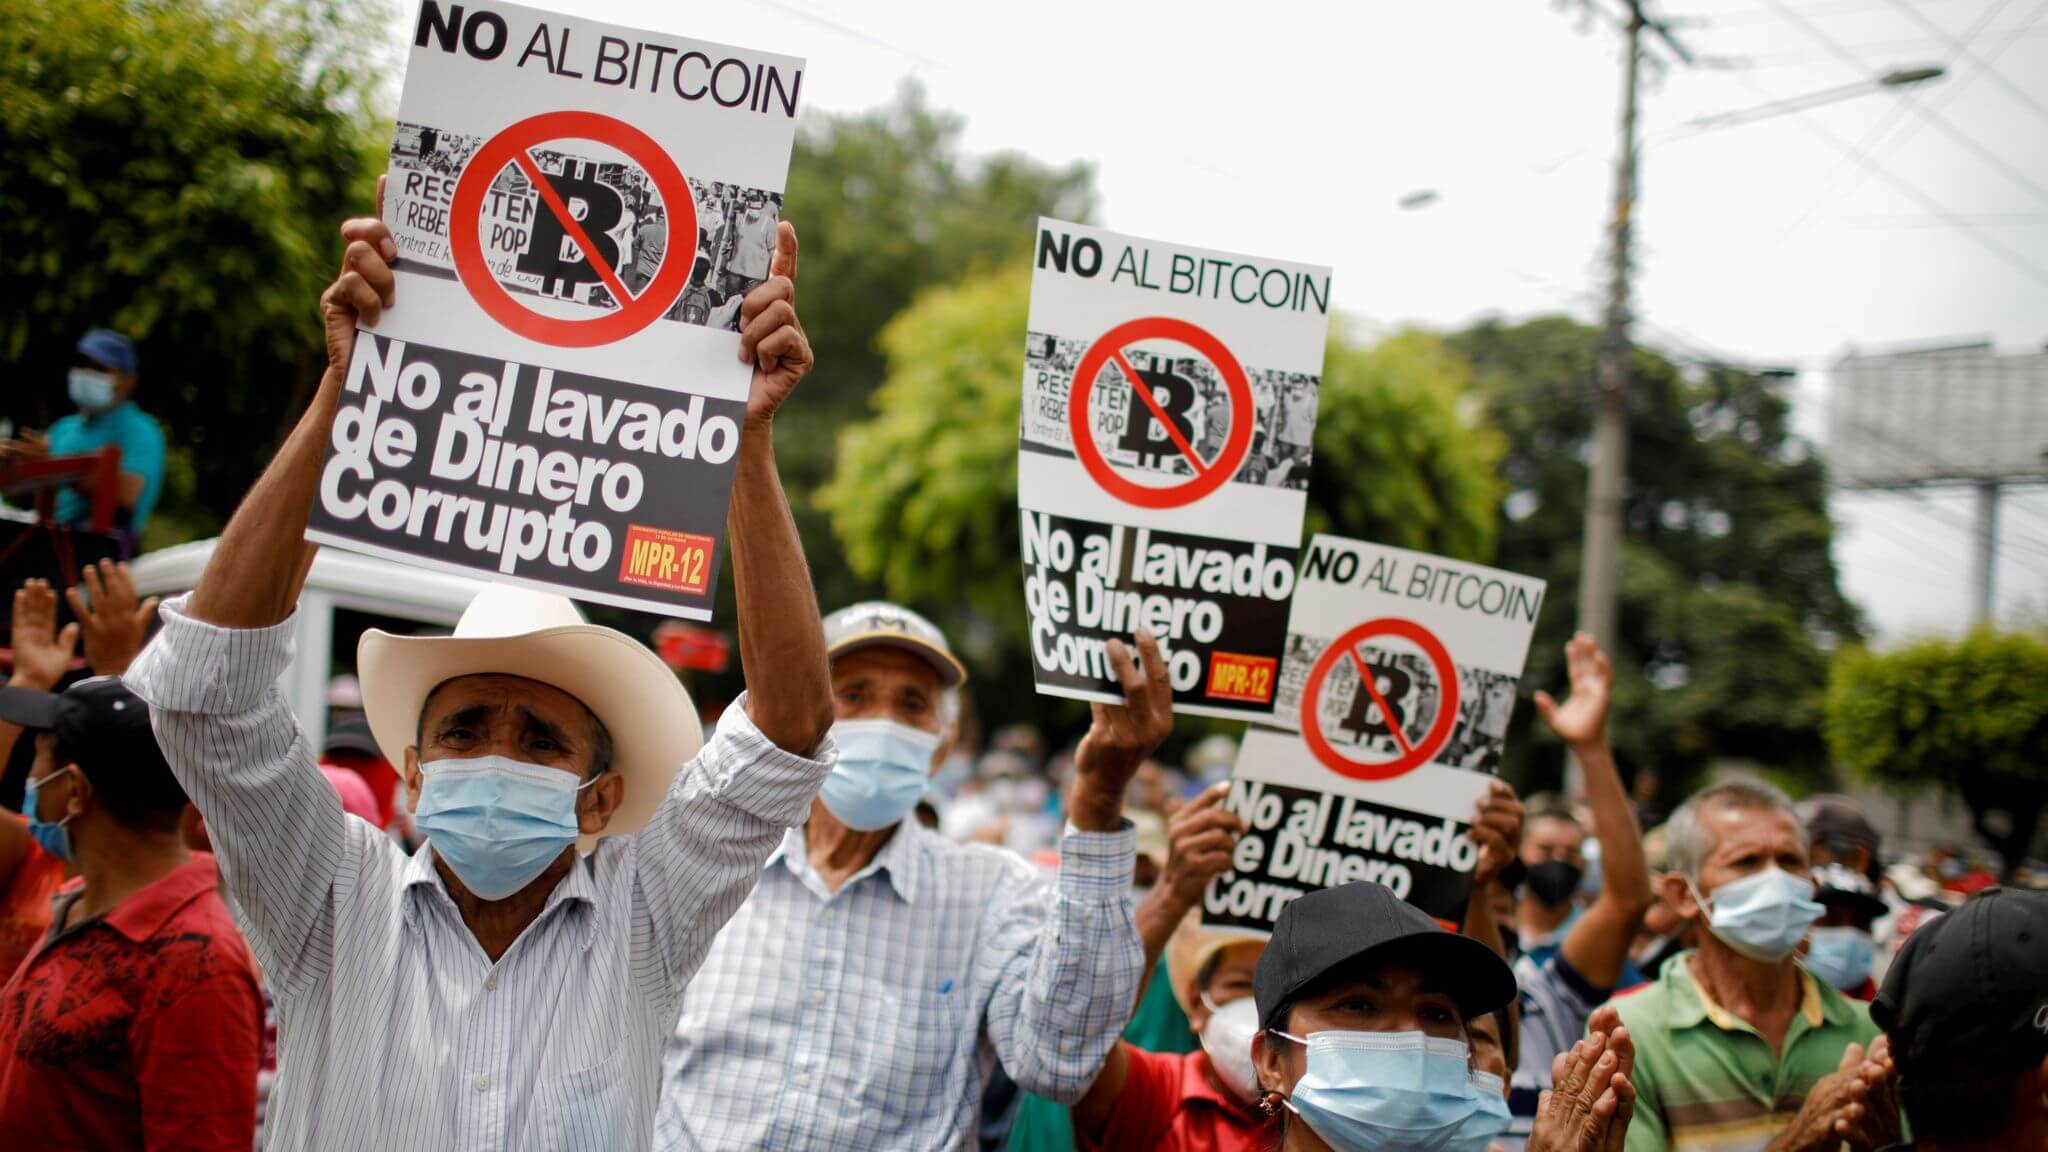 Что не так с Биткоином в Сальвадоре? Протесты против принятия Биткоина в Сальвадоре. Фото.